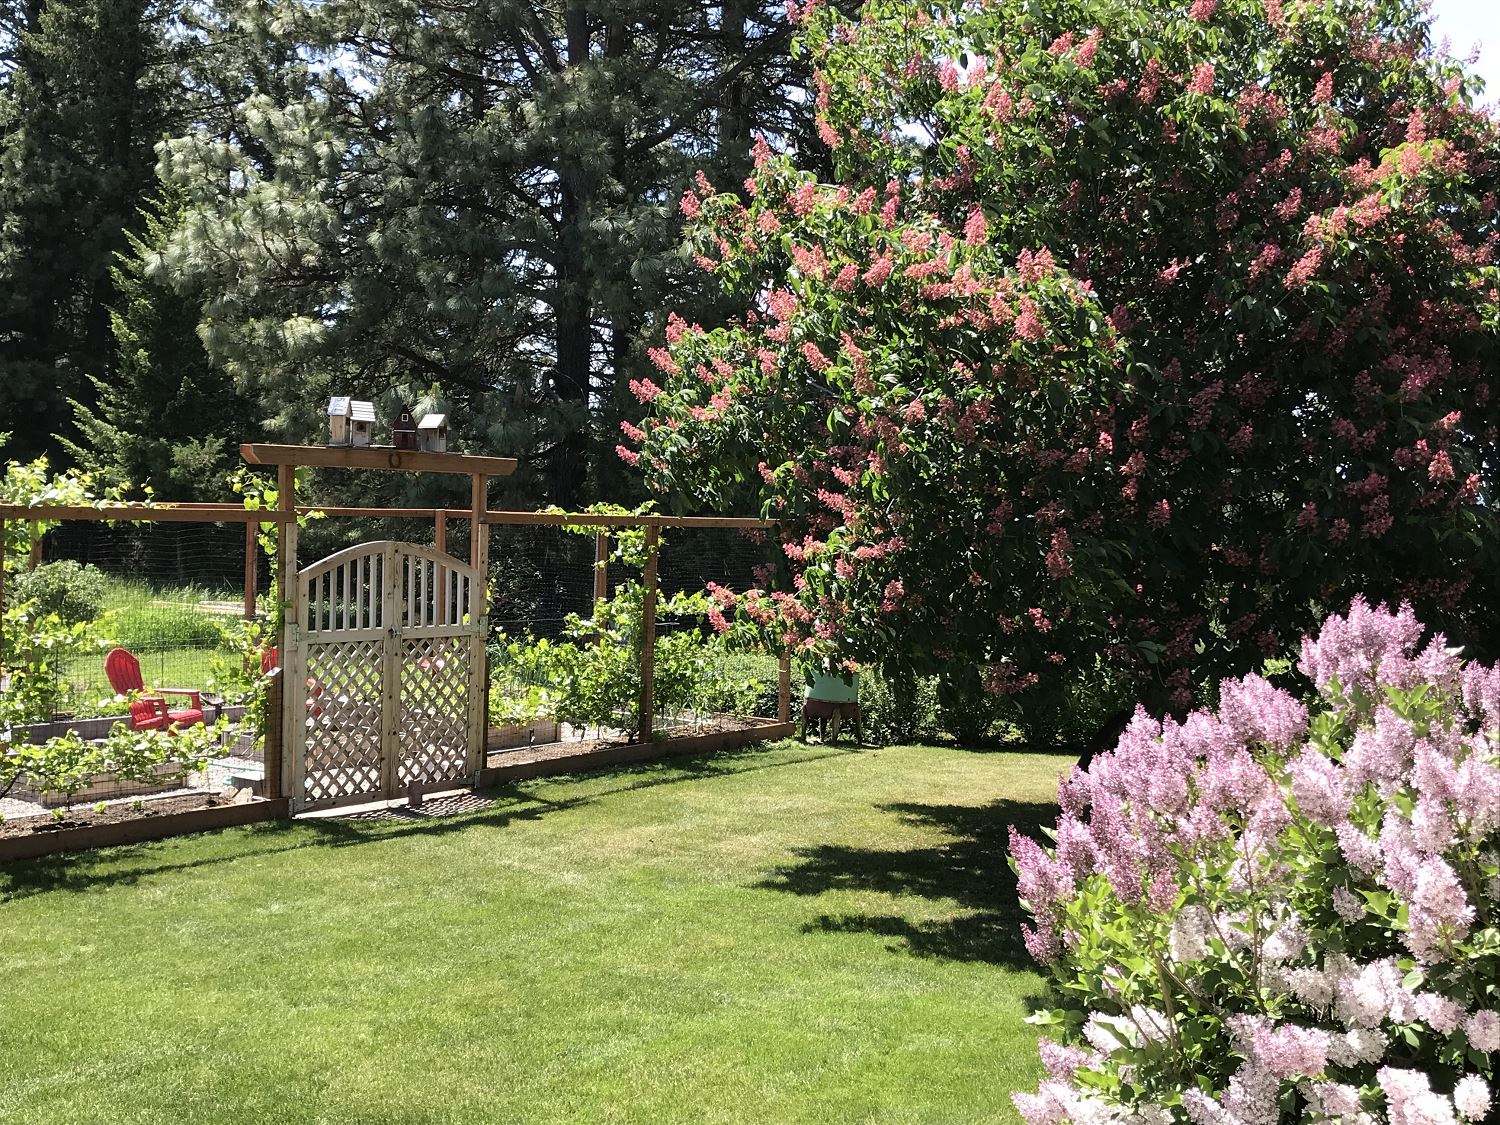 Backyard Gate in the Spring